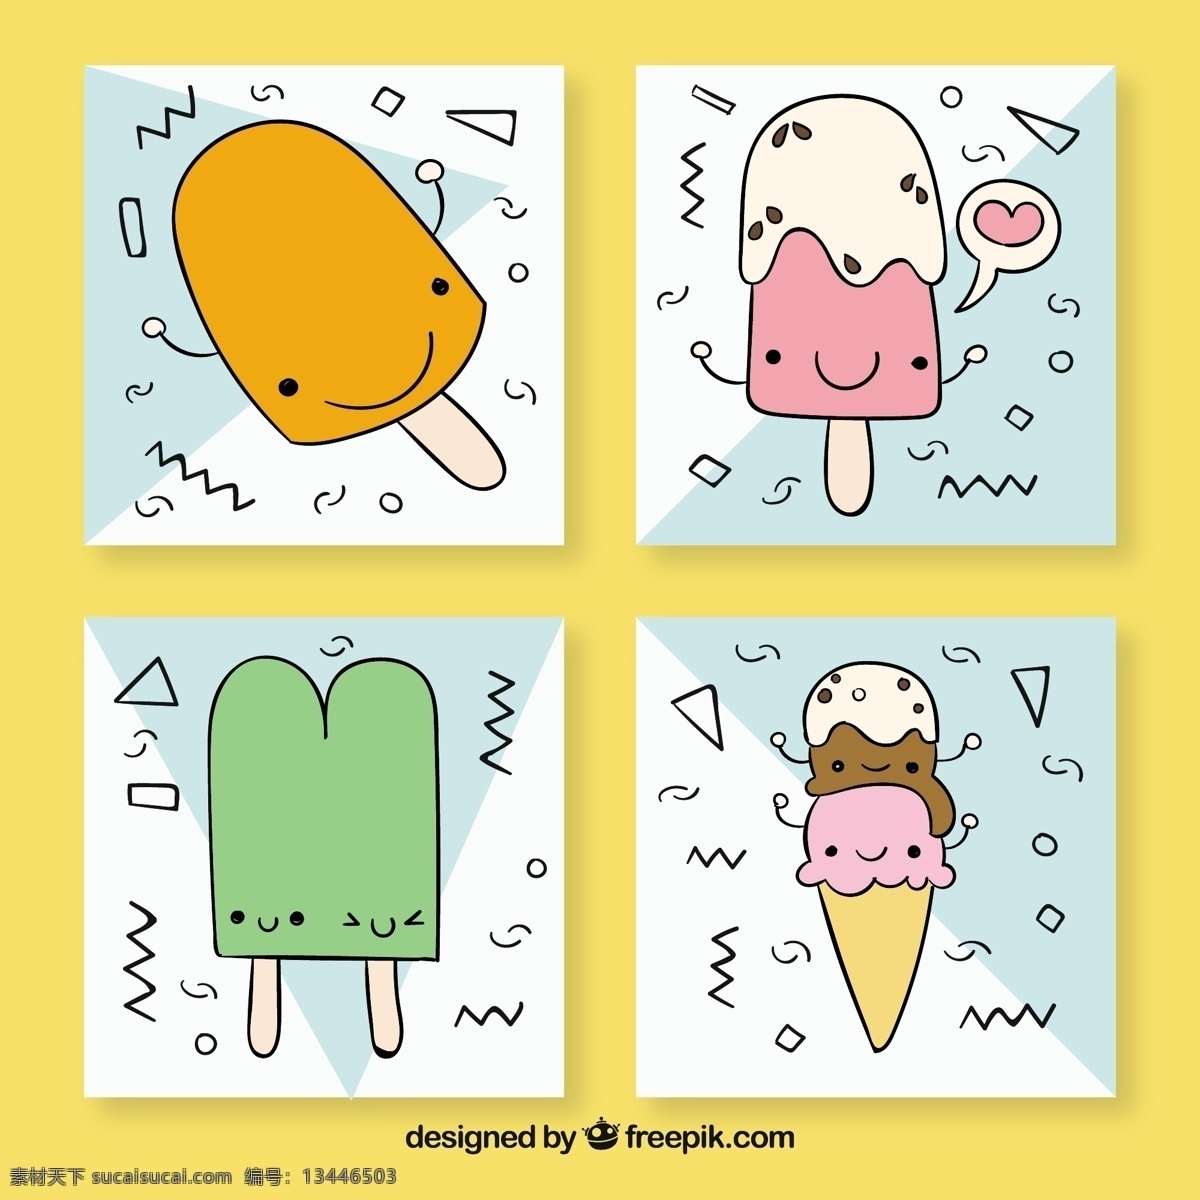 四 张 手绘 冰淇淋 人物 表情 卡片 四张 手绘冰淇淋 人物表情